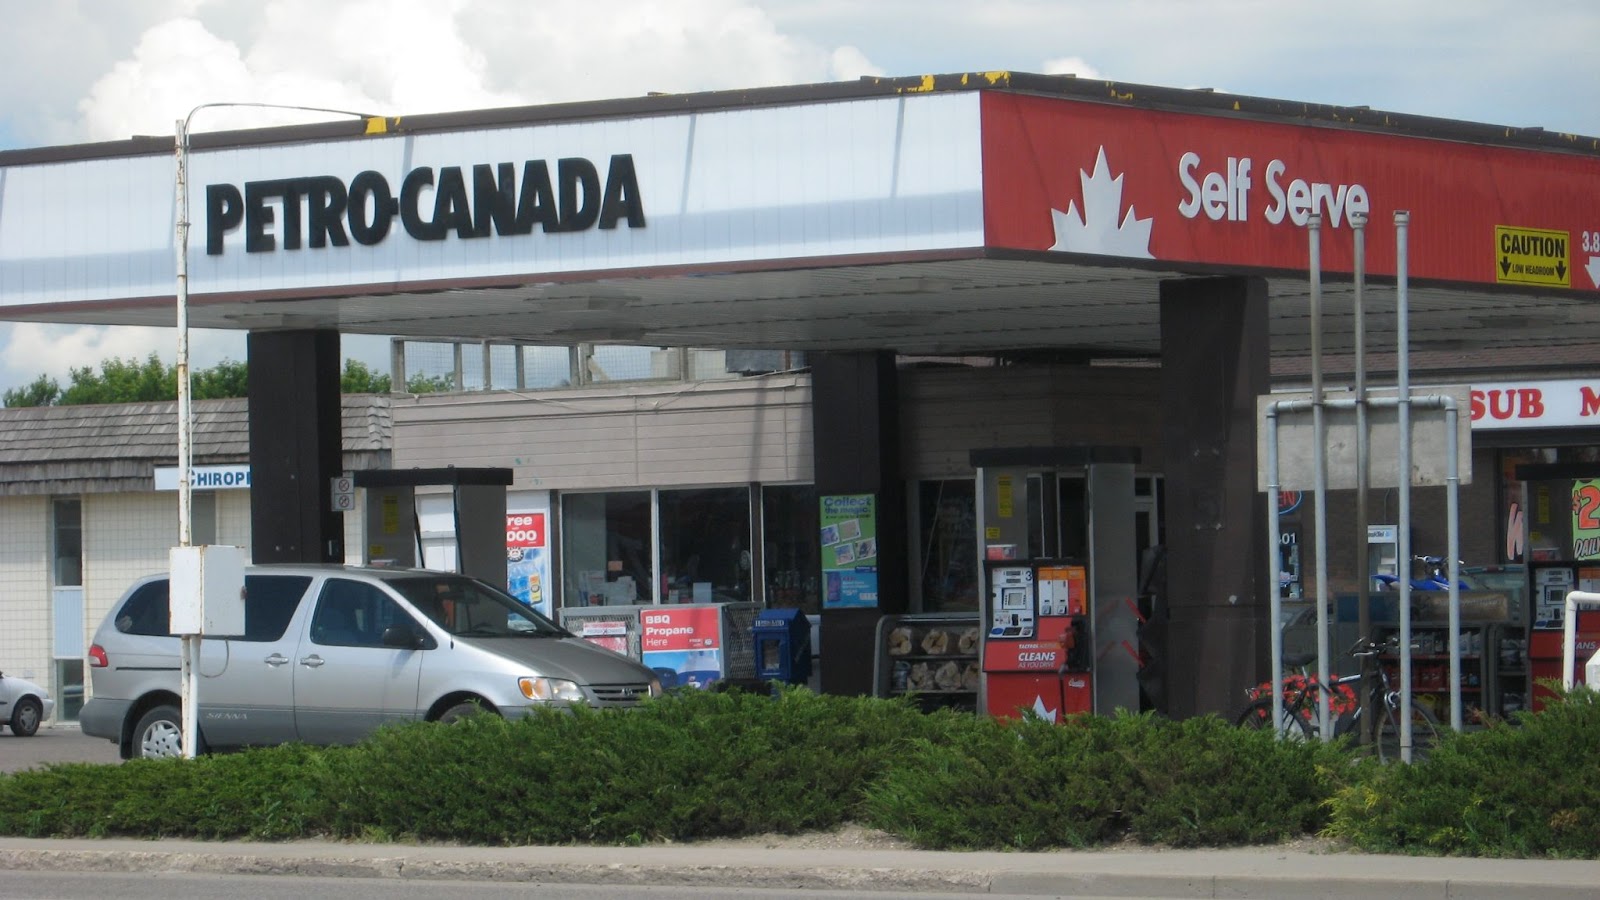 <u>Query</u>: A parked grey car waiting to get fuel<br>
      <u>Named Entity</u>: Petro Canada